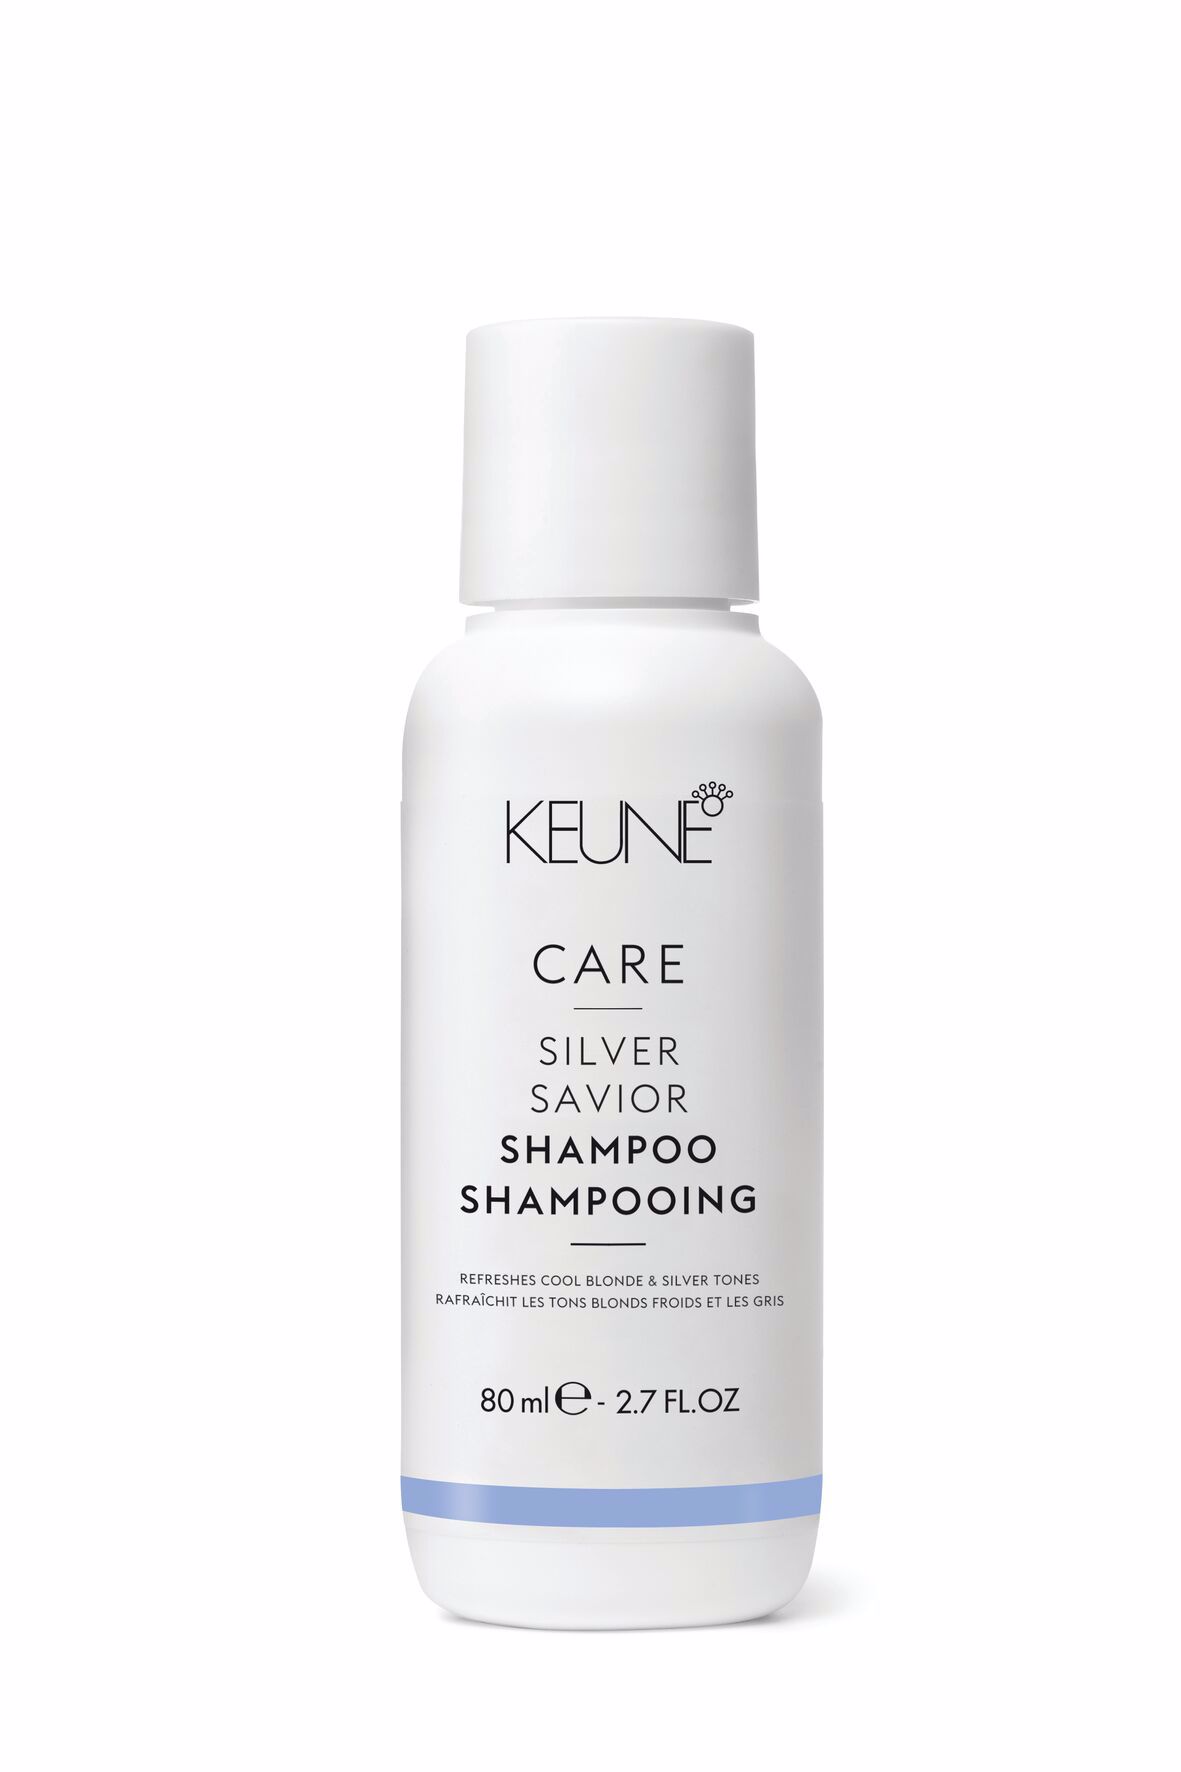 Le shampooing Care Silver Savior offre soin et protection des couleurs pour les cheveux blonds. Il neutralise les tons jaunes. Contient de la provitamine B5 et les protéines de blé ajoutent du volume.